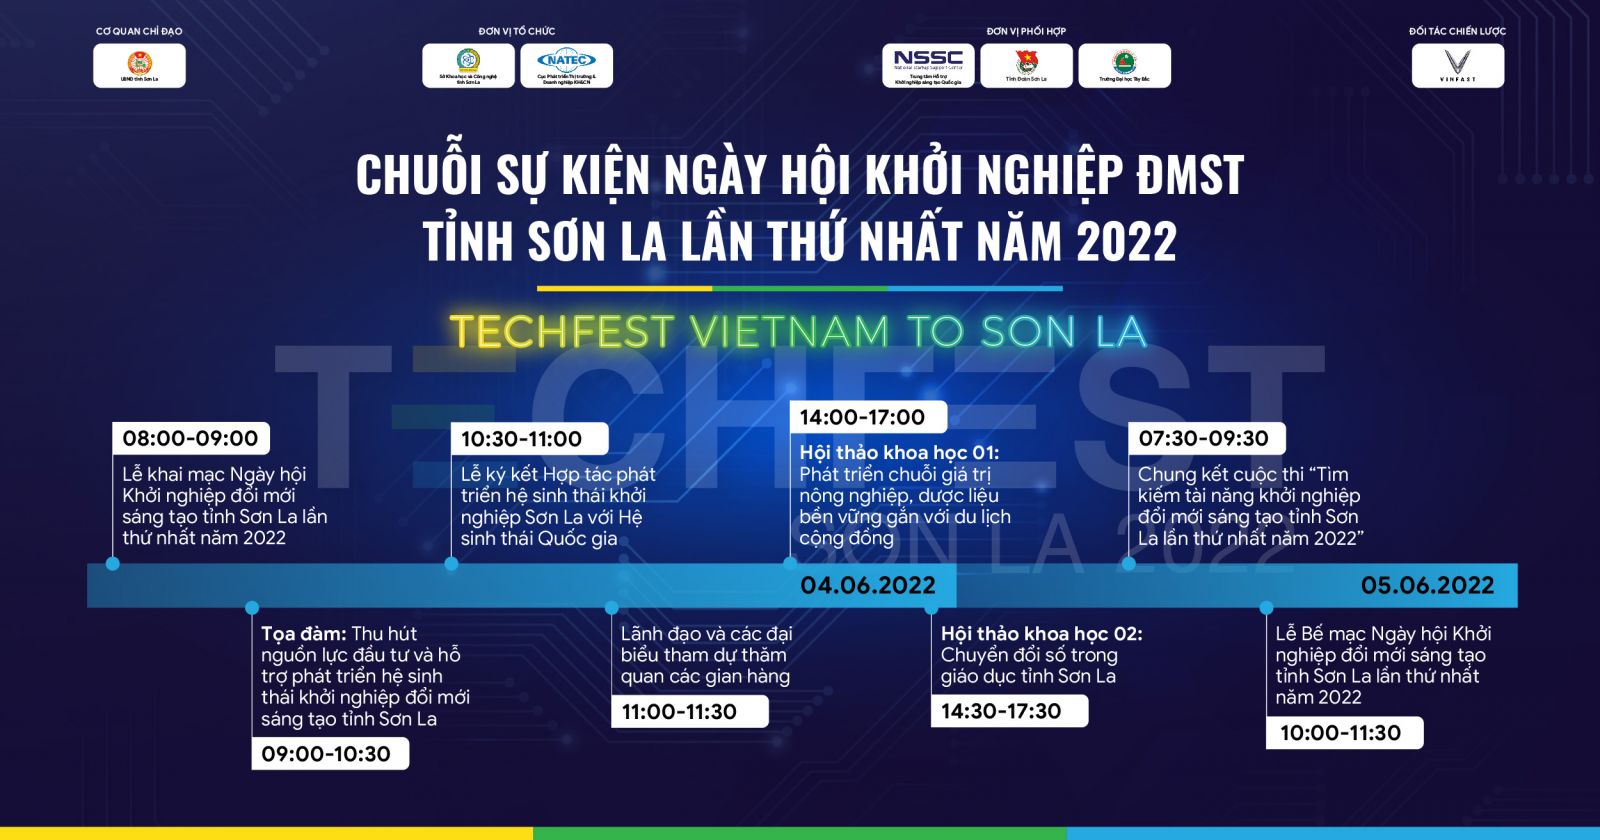 Ngày hội Khởi nghiệp đổi mới sáng tạo tỉnh Sơn La lần thứ nhất năm 2022